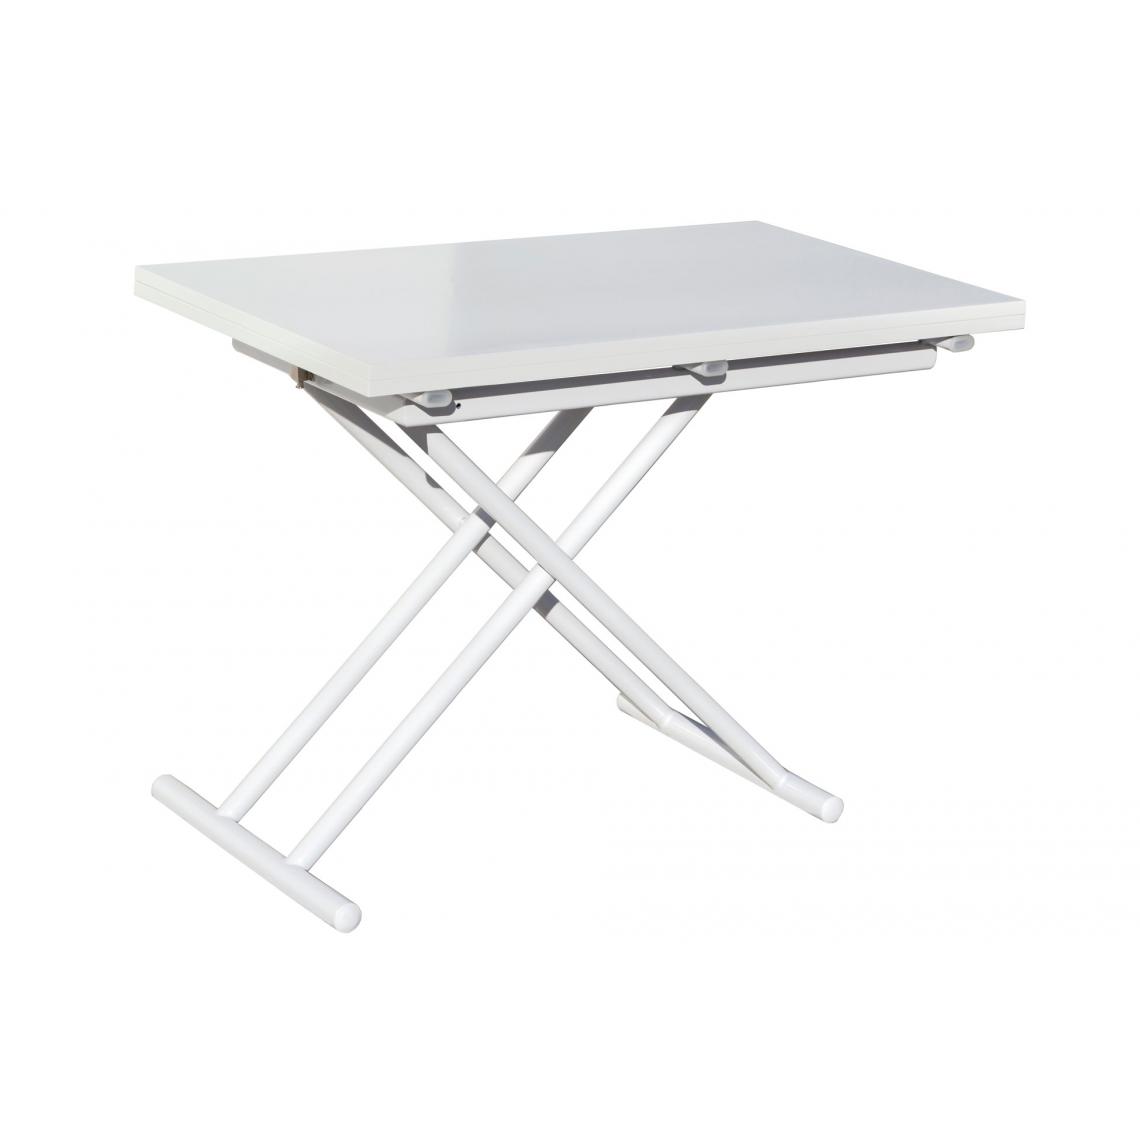 Pegane - Table basse relevable rectangulaire extensible coloris blanc - Longueur 100 x largeur 50-100 cm - Tables basses